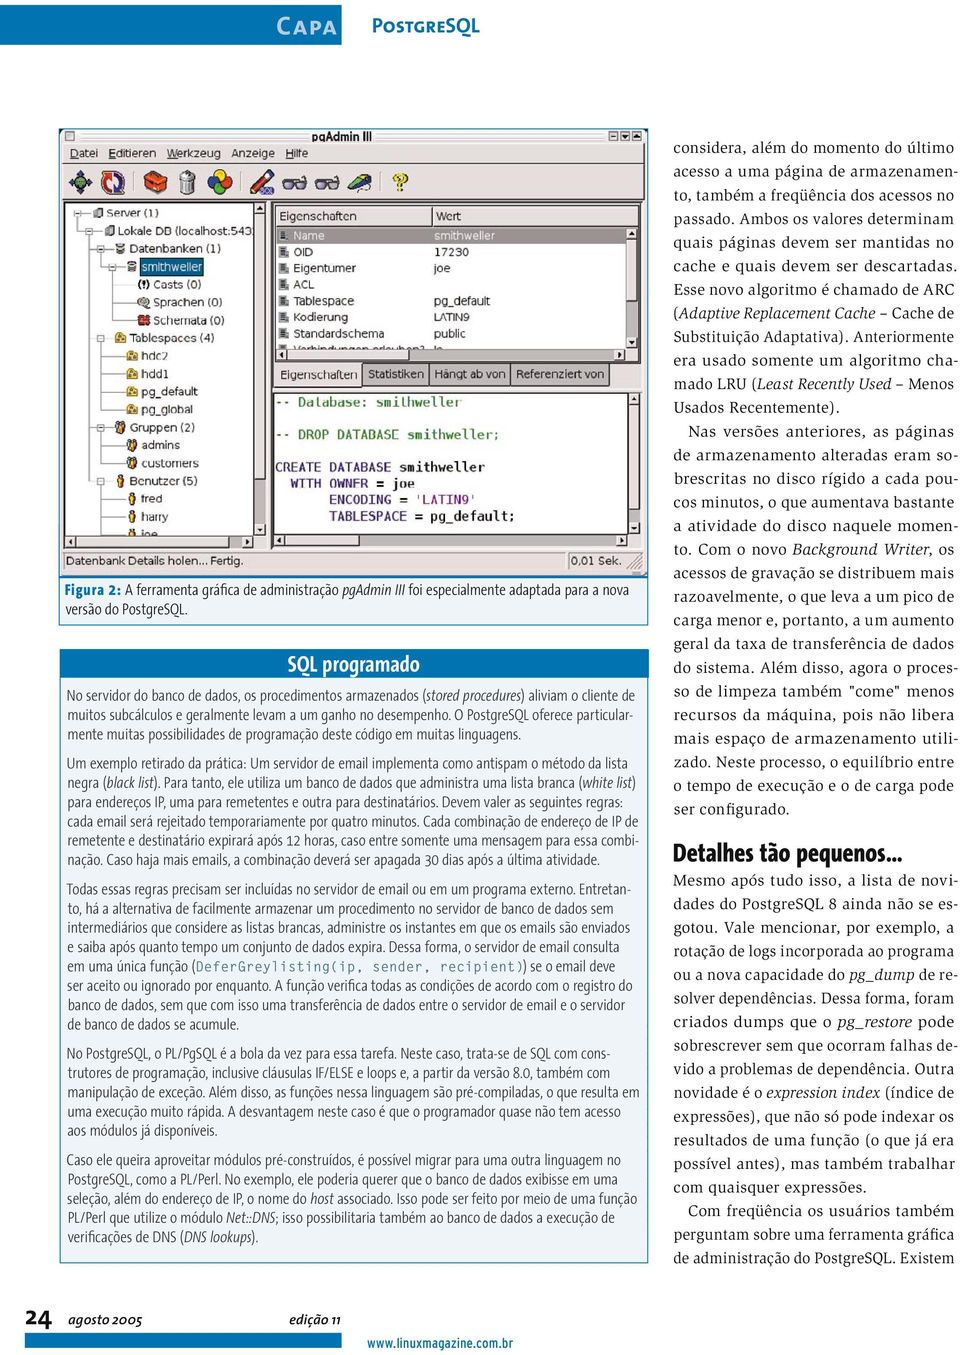 O PostgreSQL oferece particularmente muitas possibilidades de programação deste código em muitas linguagens.